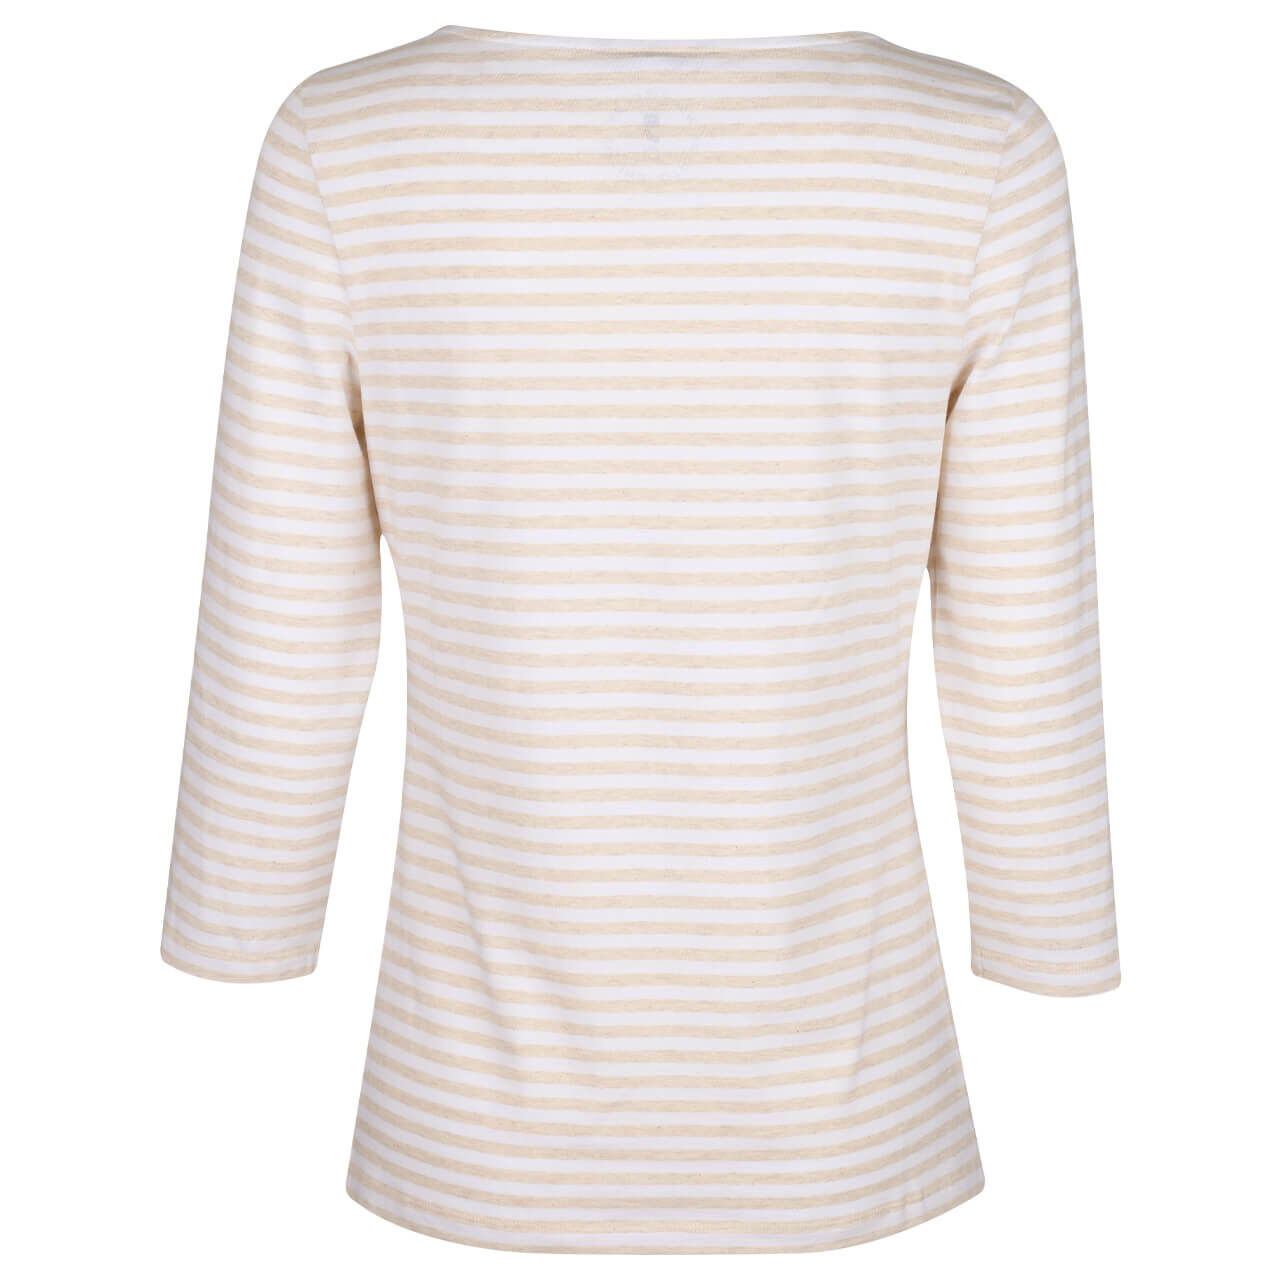 Comma Damen 3/4 Arm Shirt cream stripes